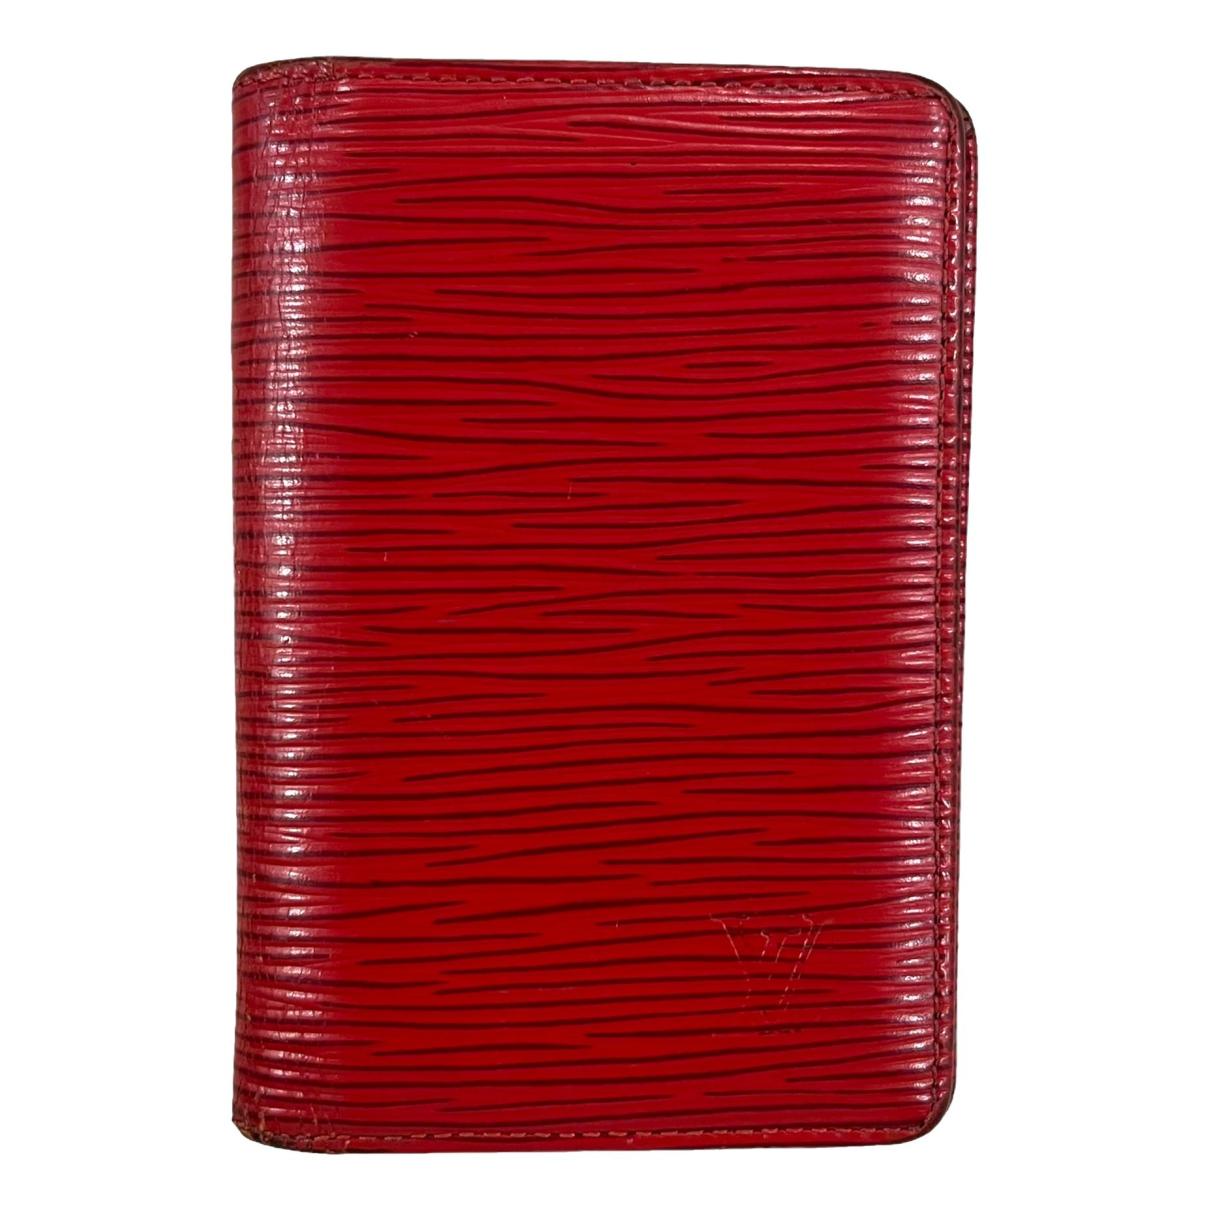 Louis Vuitton Epi Leather Pocket Organizer on SALE